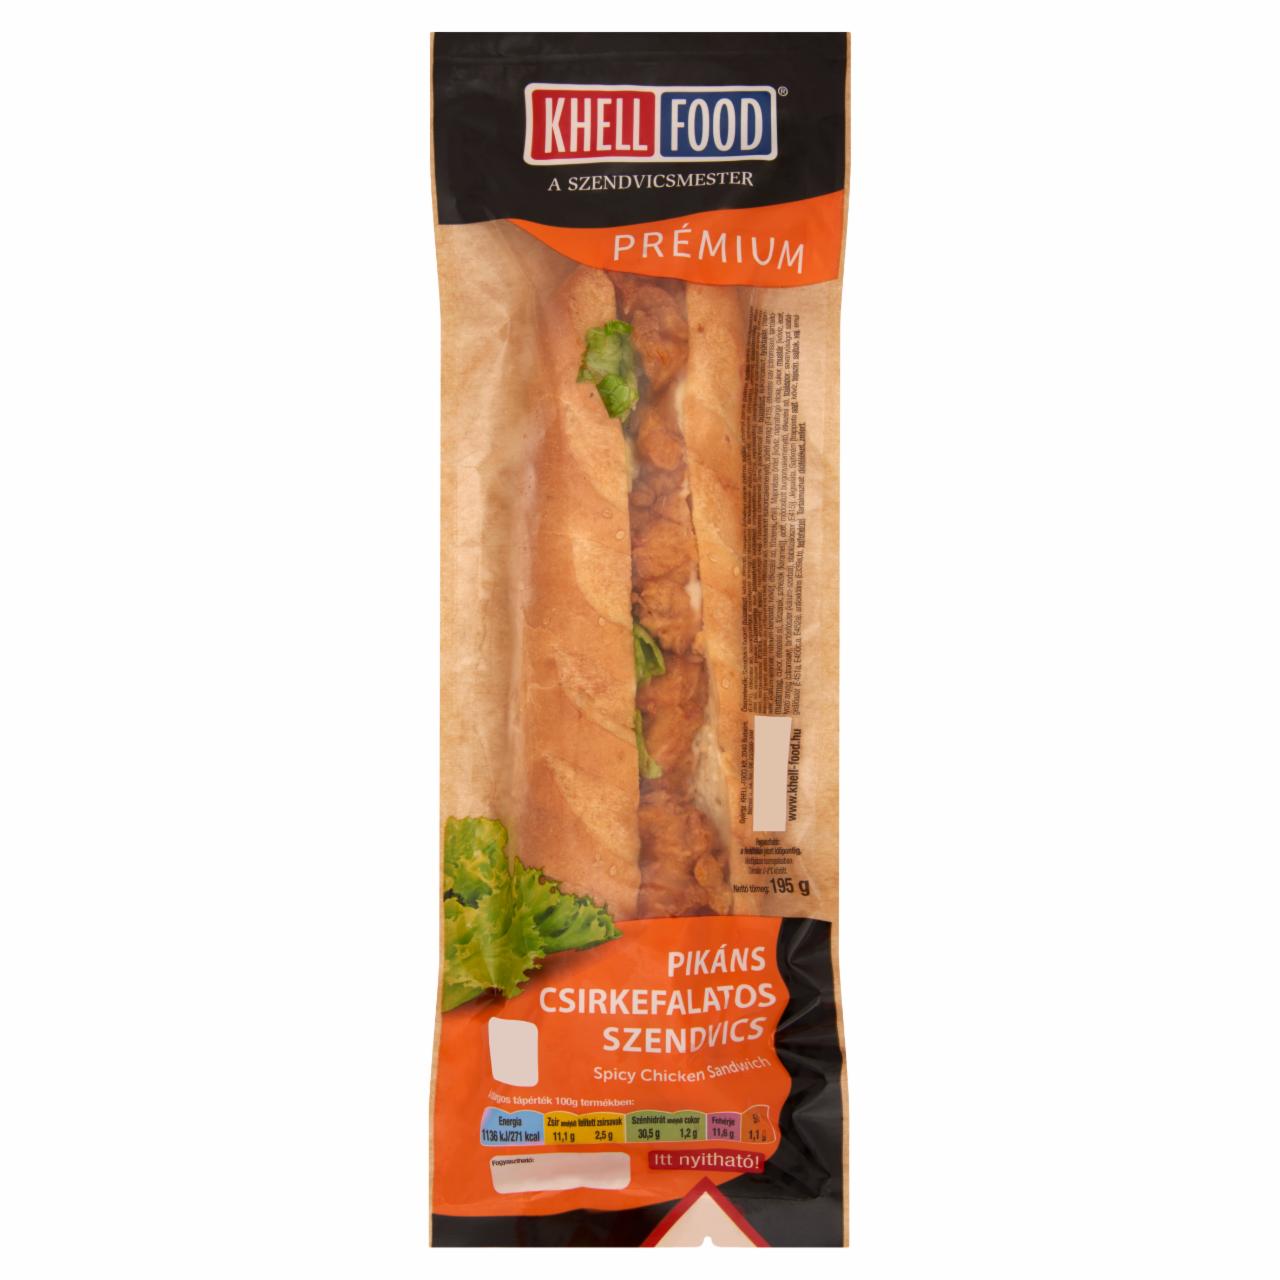 Képek - Khell-Food Prémium pikáns csirkefalatos szendvics 195 g